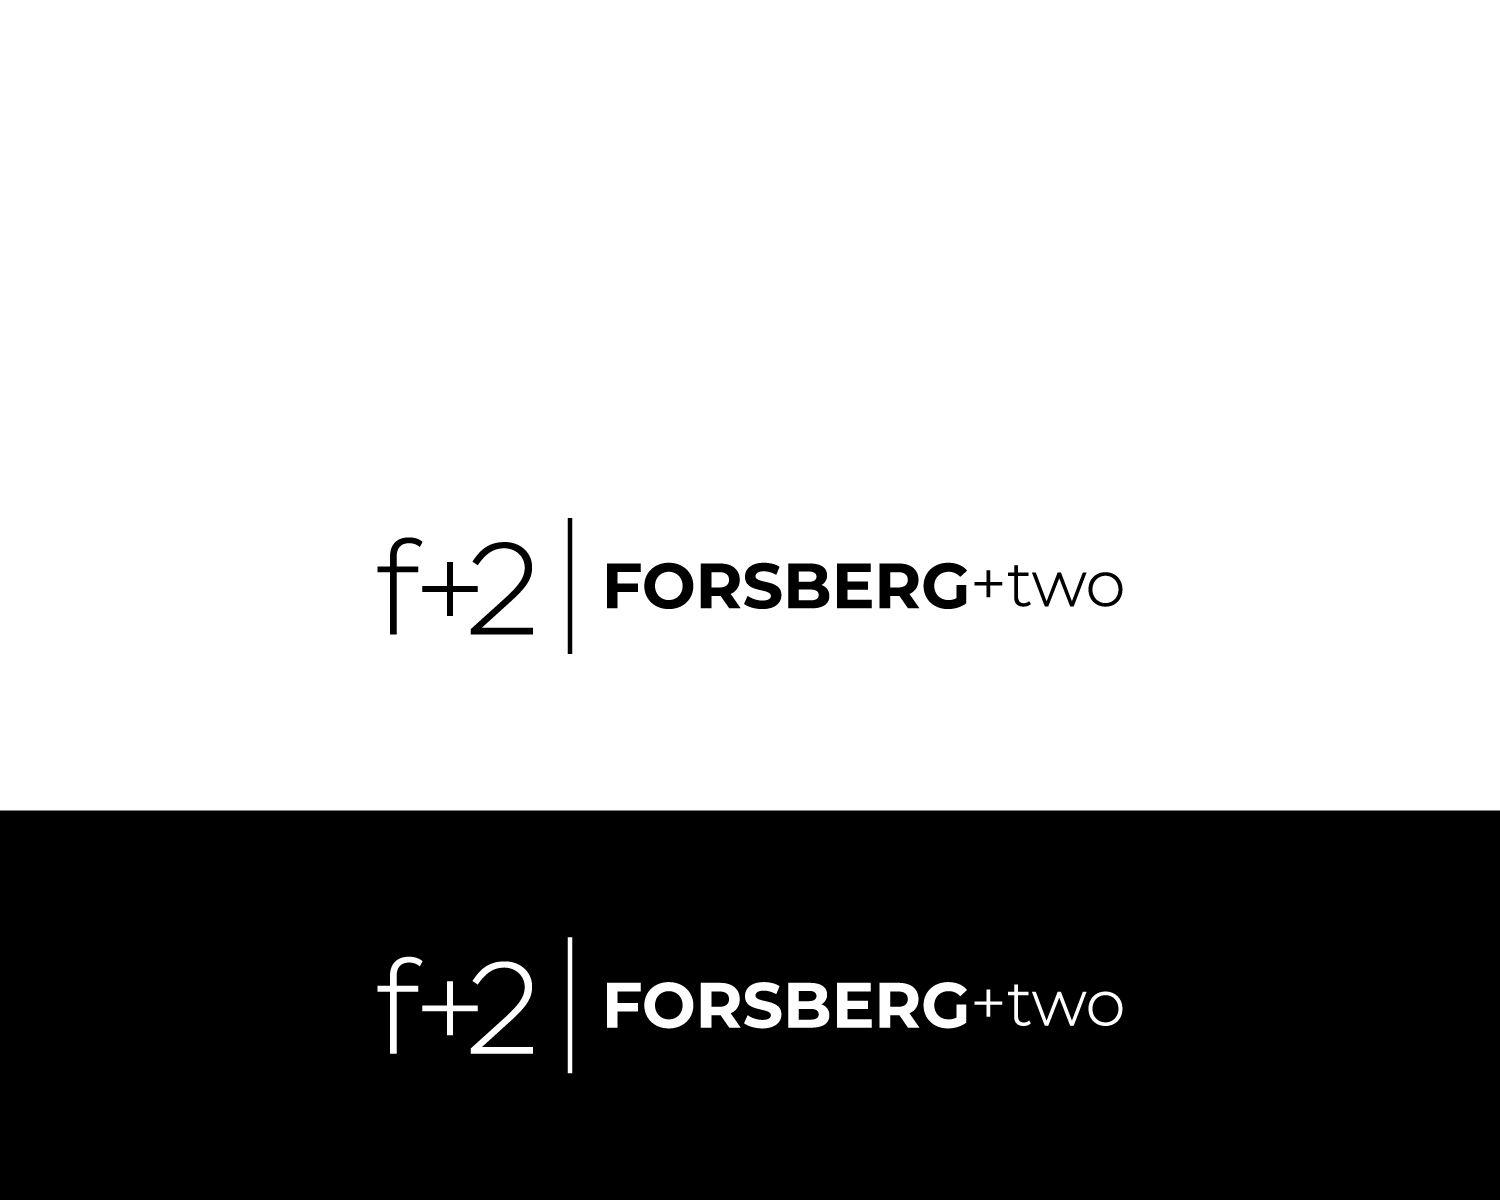 Two F Logo - Modern, Upmarket, Software Logo Design For Just A Logomark Symbol